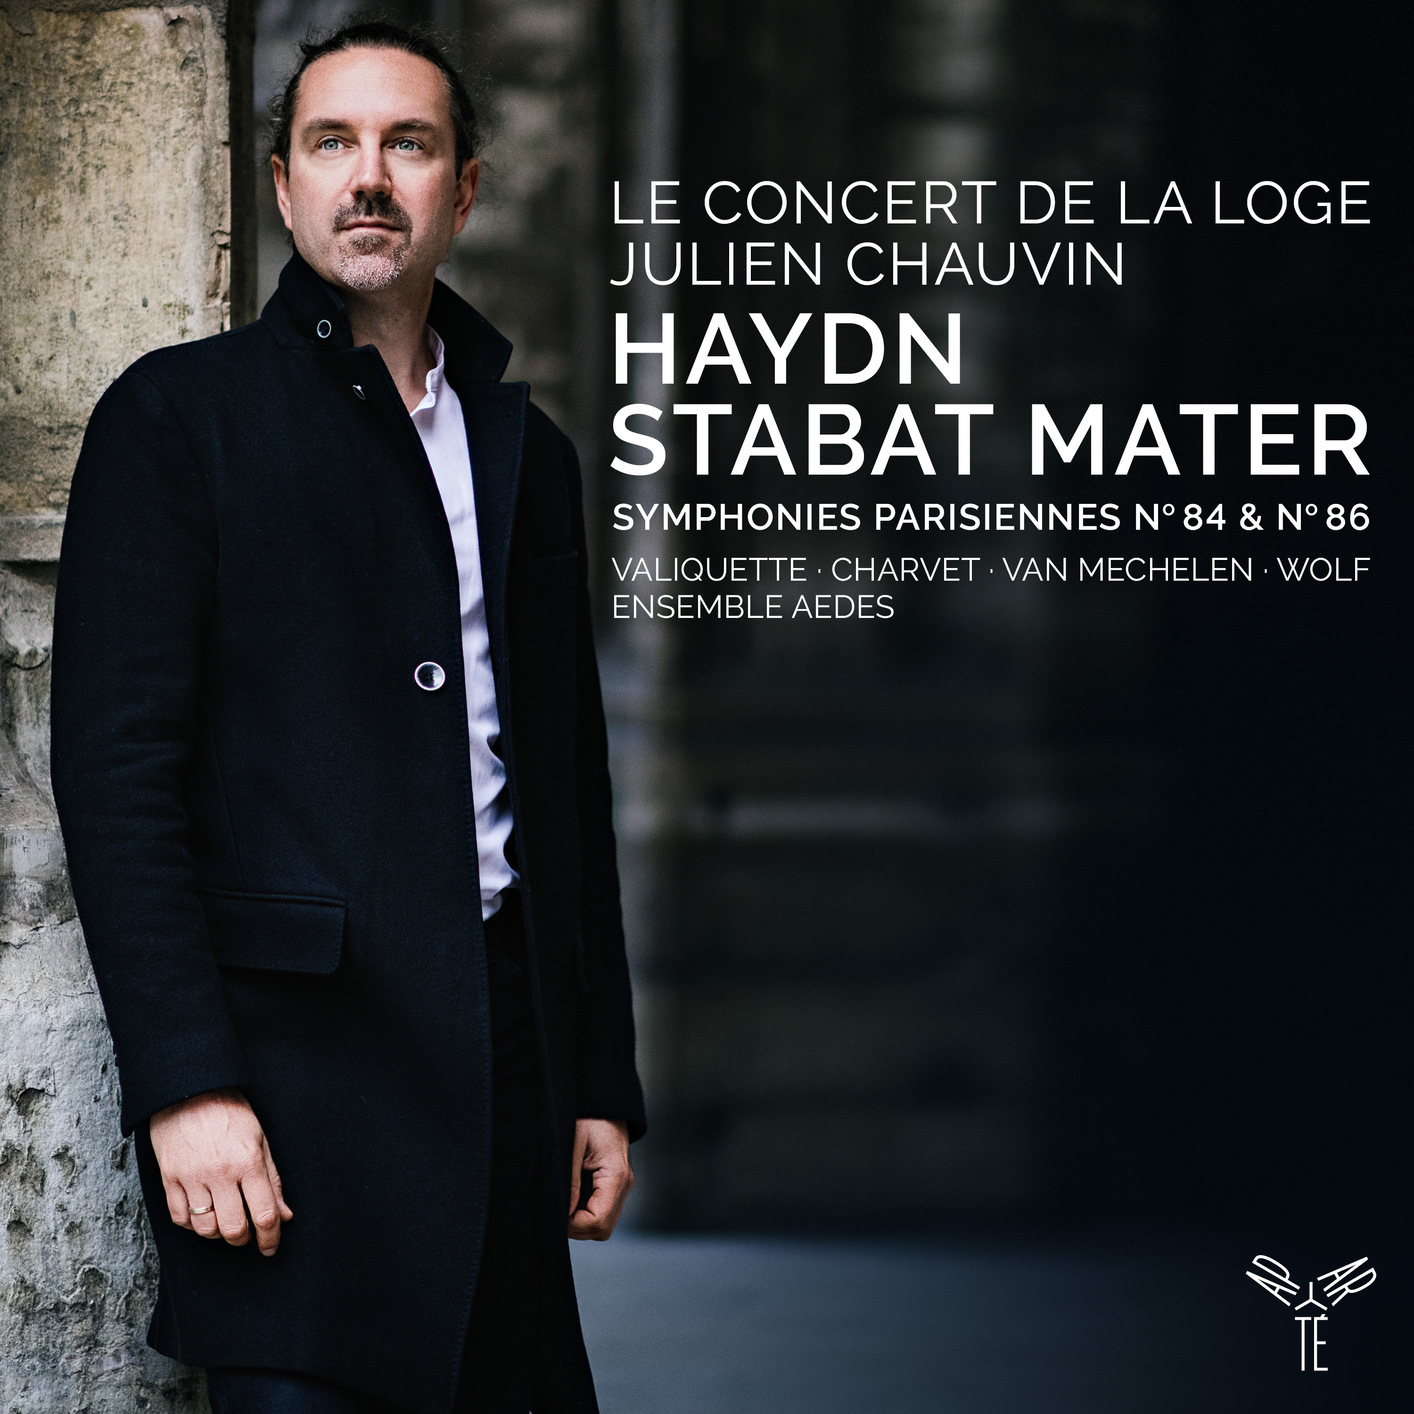 Le Concert de la Loge - Julien Chauvin - Haydn: Stabat Mater - Symphonies 84 & 86 (2021) [FLAC 24bit/96kHz]